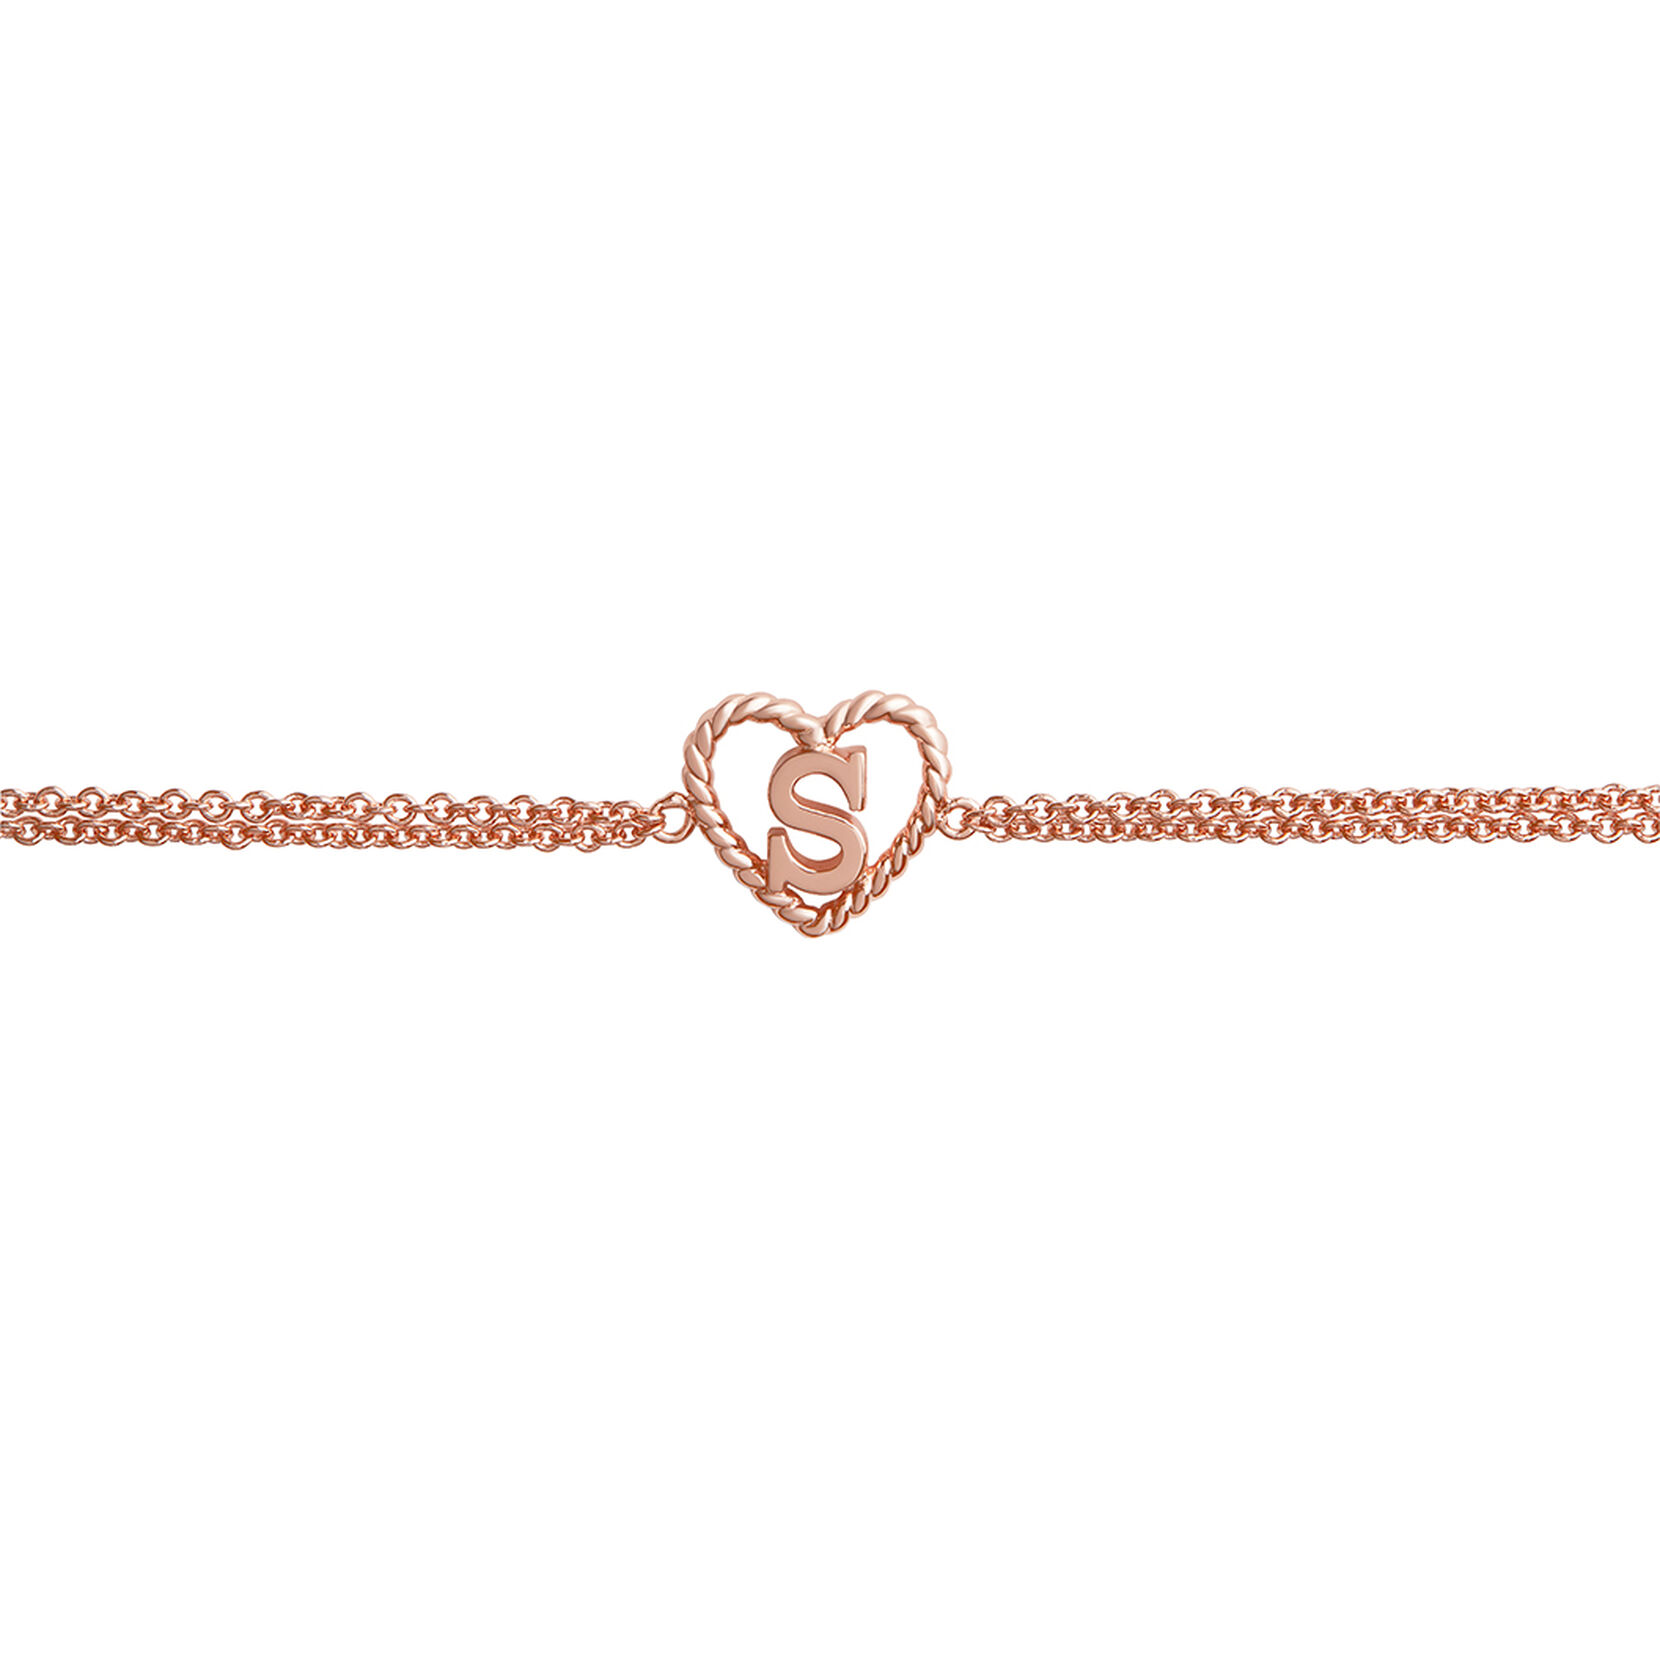 'S' Heart Initial Chain Women's Bracelet